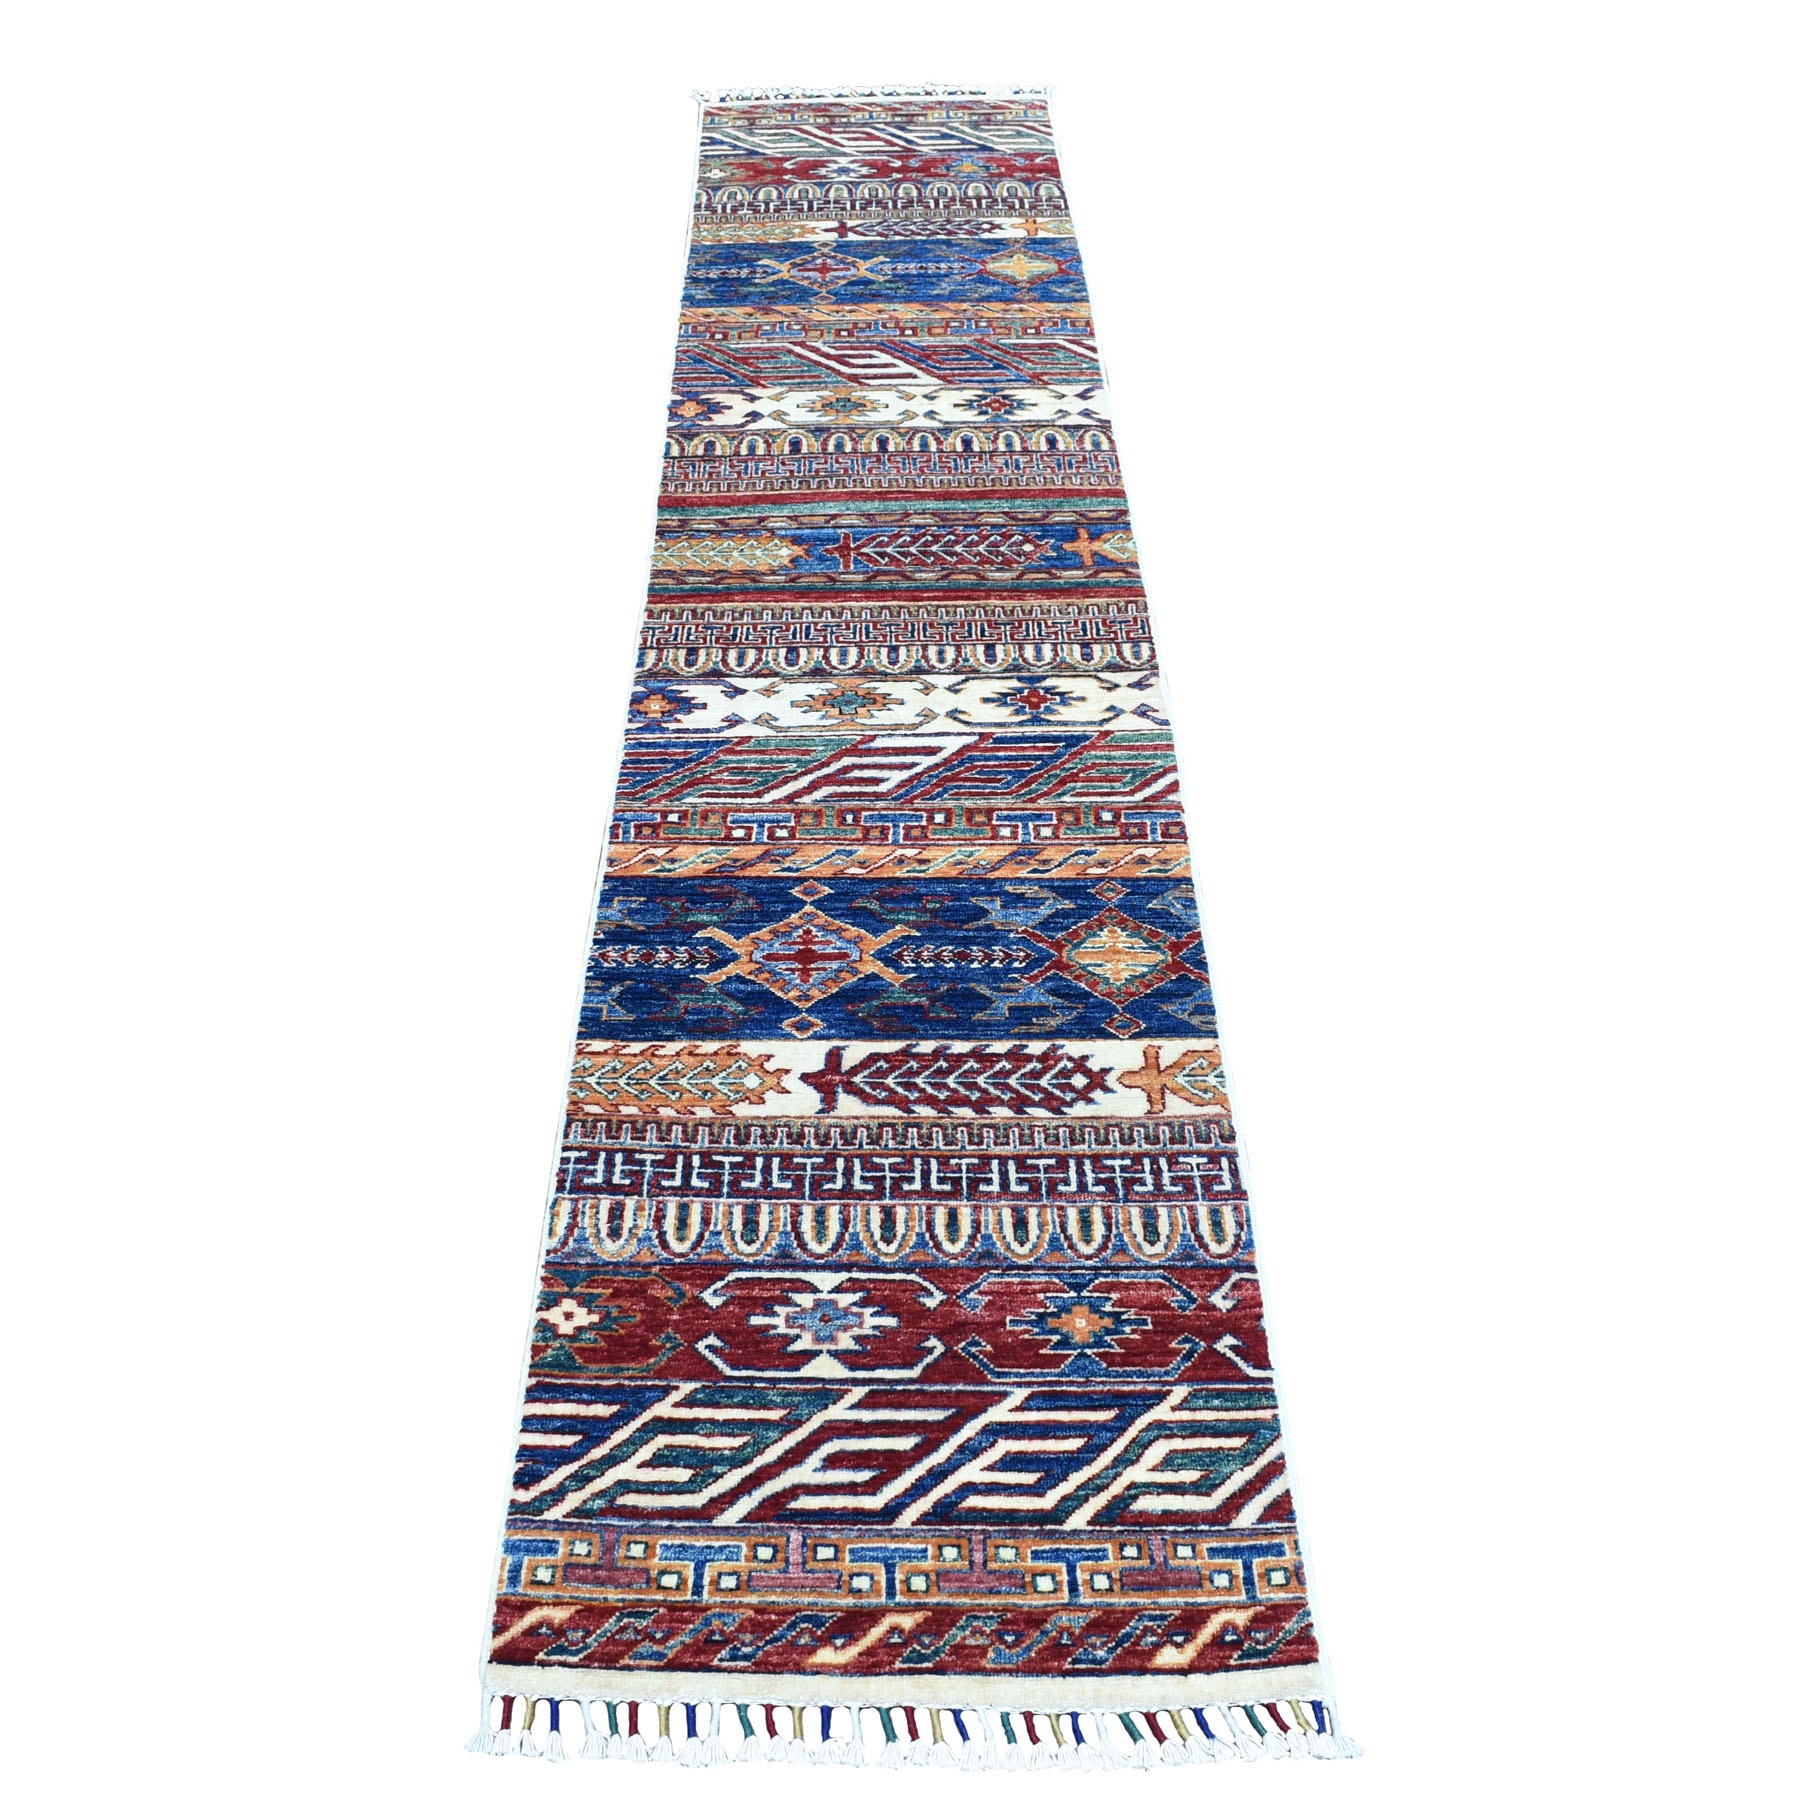 2'x9'3" Khorjin Design Runner Blue Super Kazak Tribal Pure Wool Hand Woven Oriental Rug 